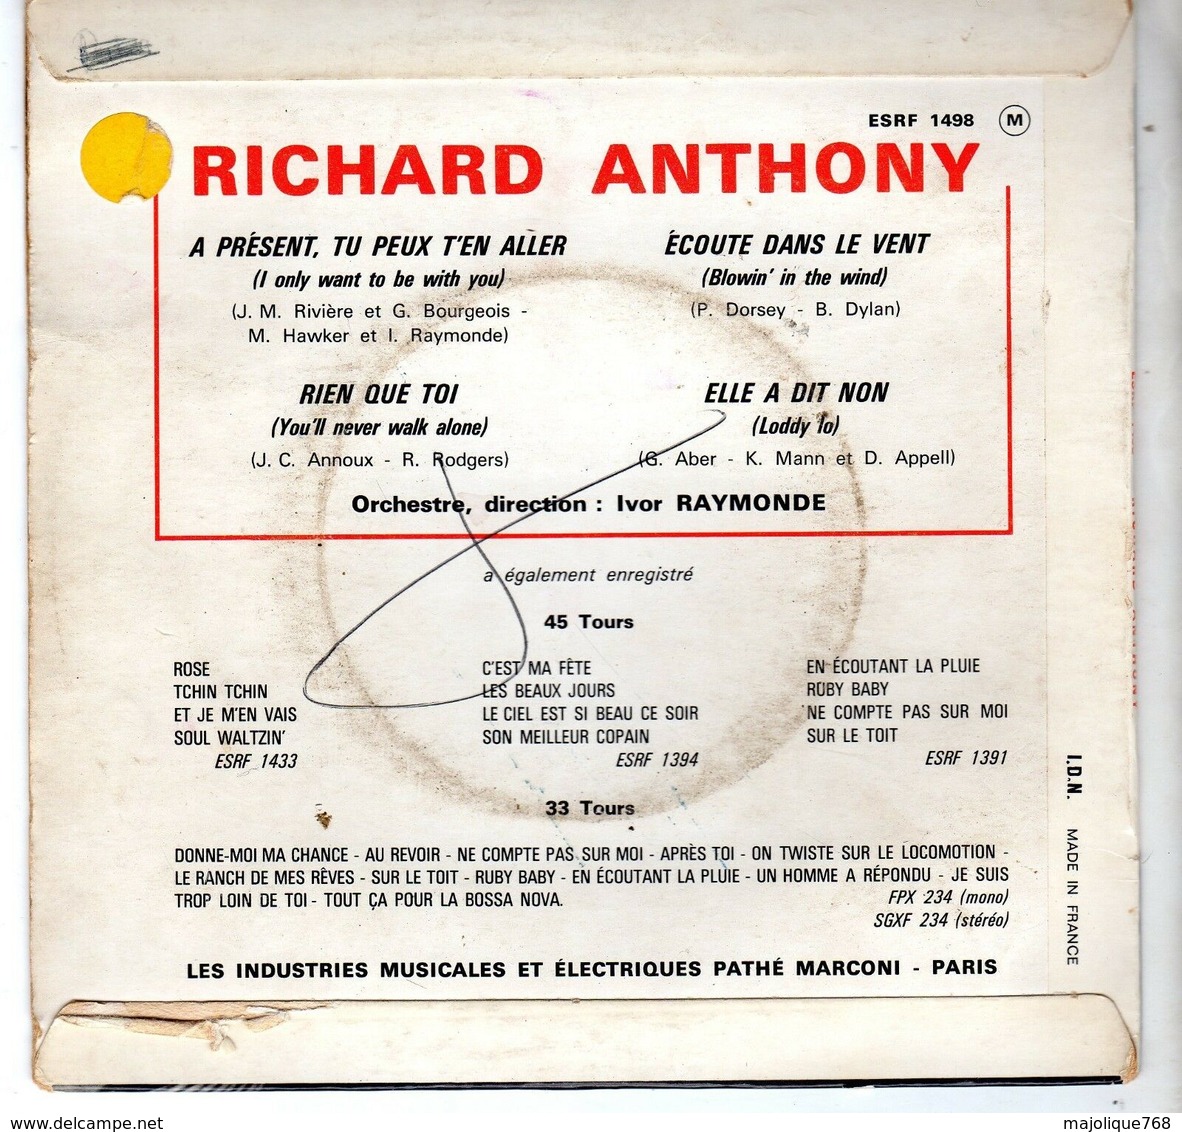 Disque De Richard Anthony - A Présent, Tu Peux T'en Aller - Columbia 1498 - 1964 - Autres - Musique Française